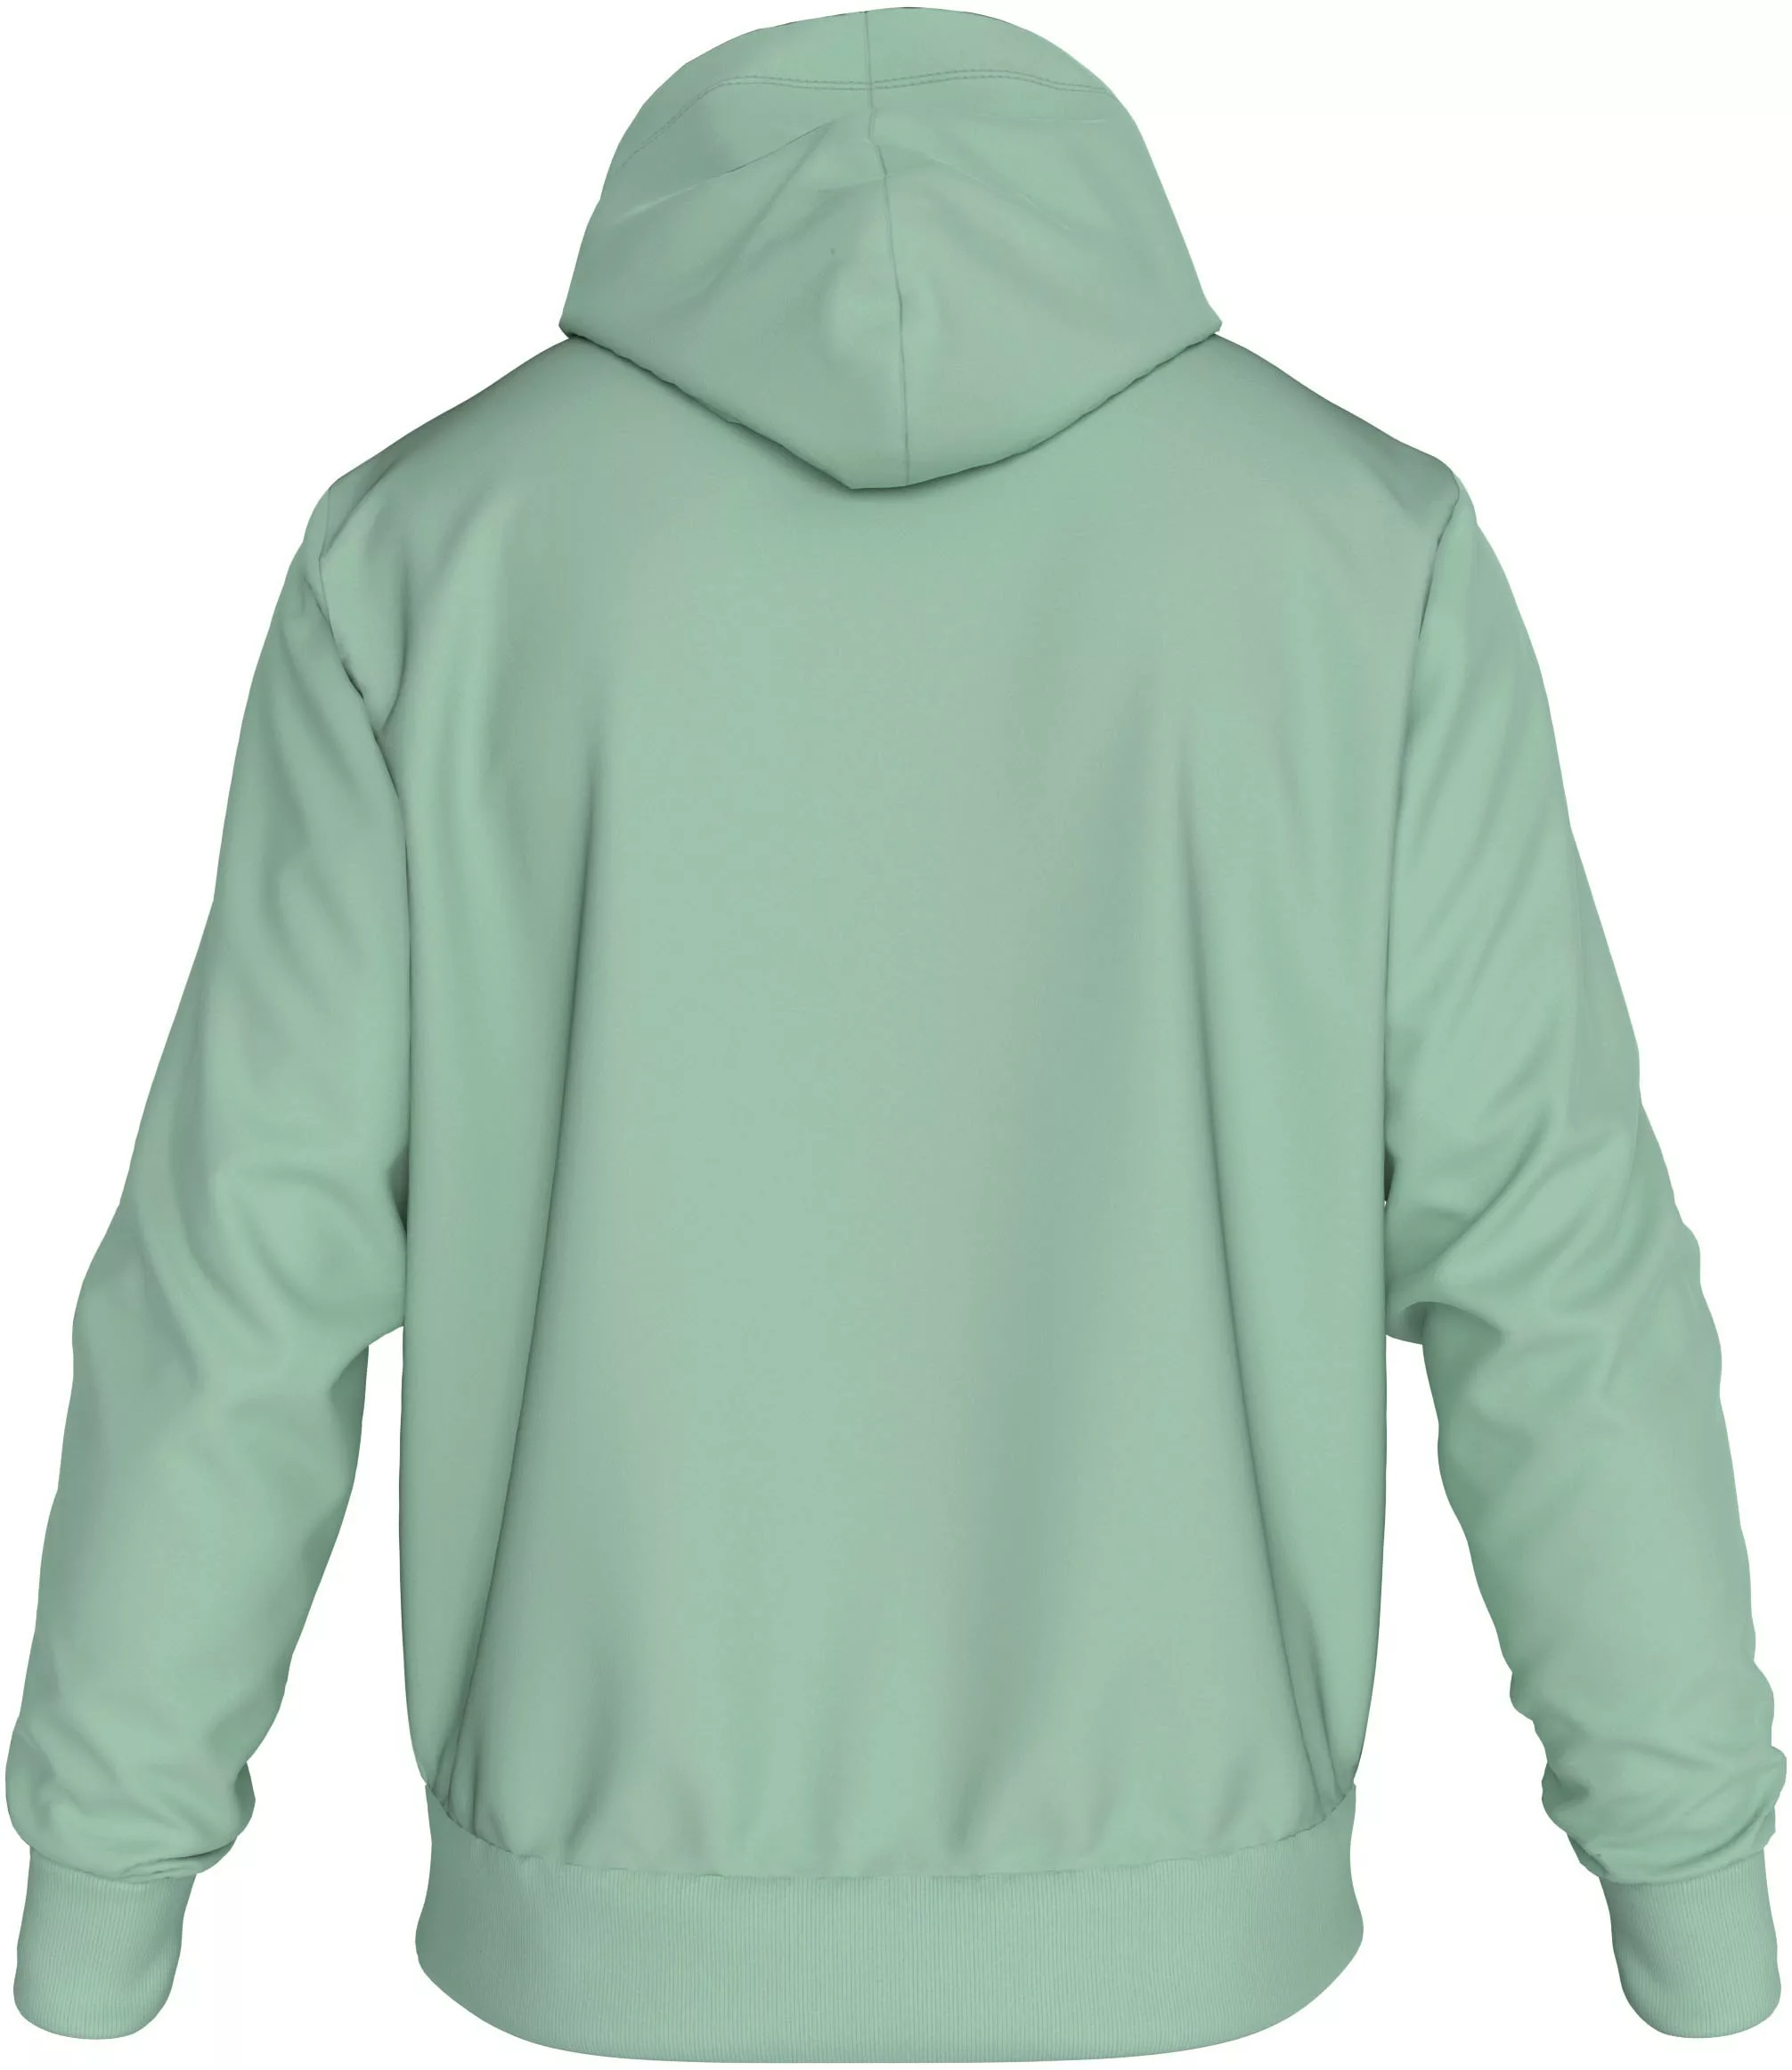 Calvin Klein Big&Tall Kapuzensweatshirt BT_HERO LOGO COMFORT HOODIE in groß günstig online kaufen